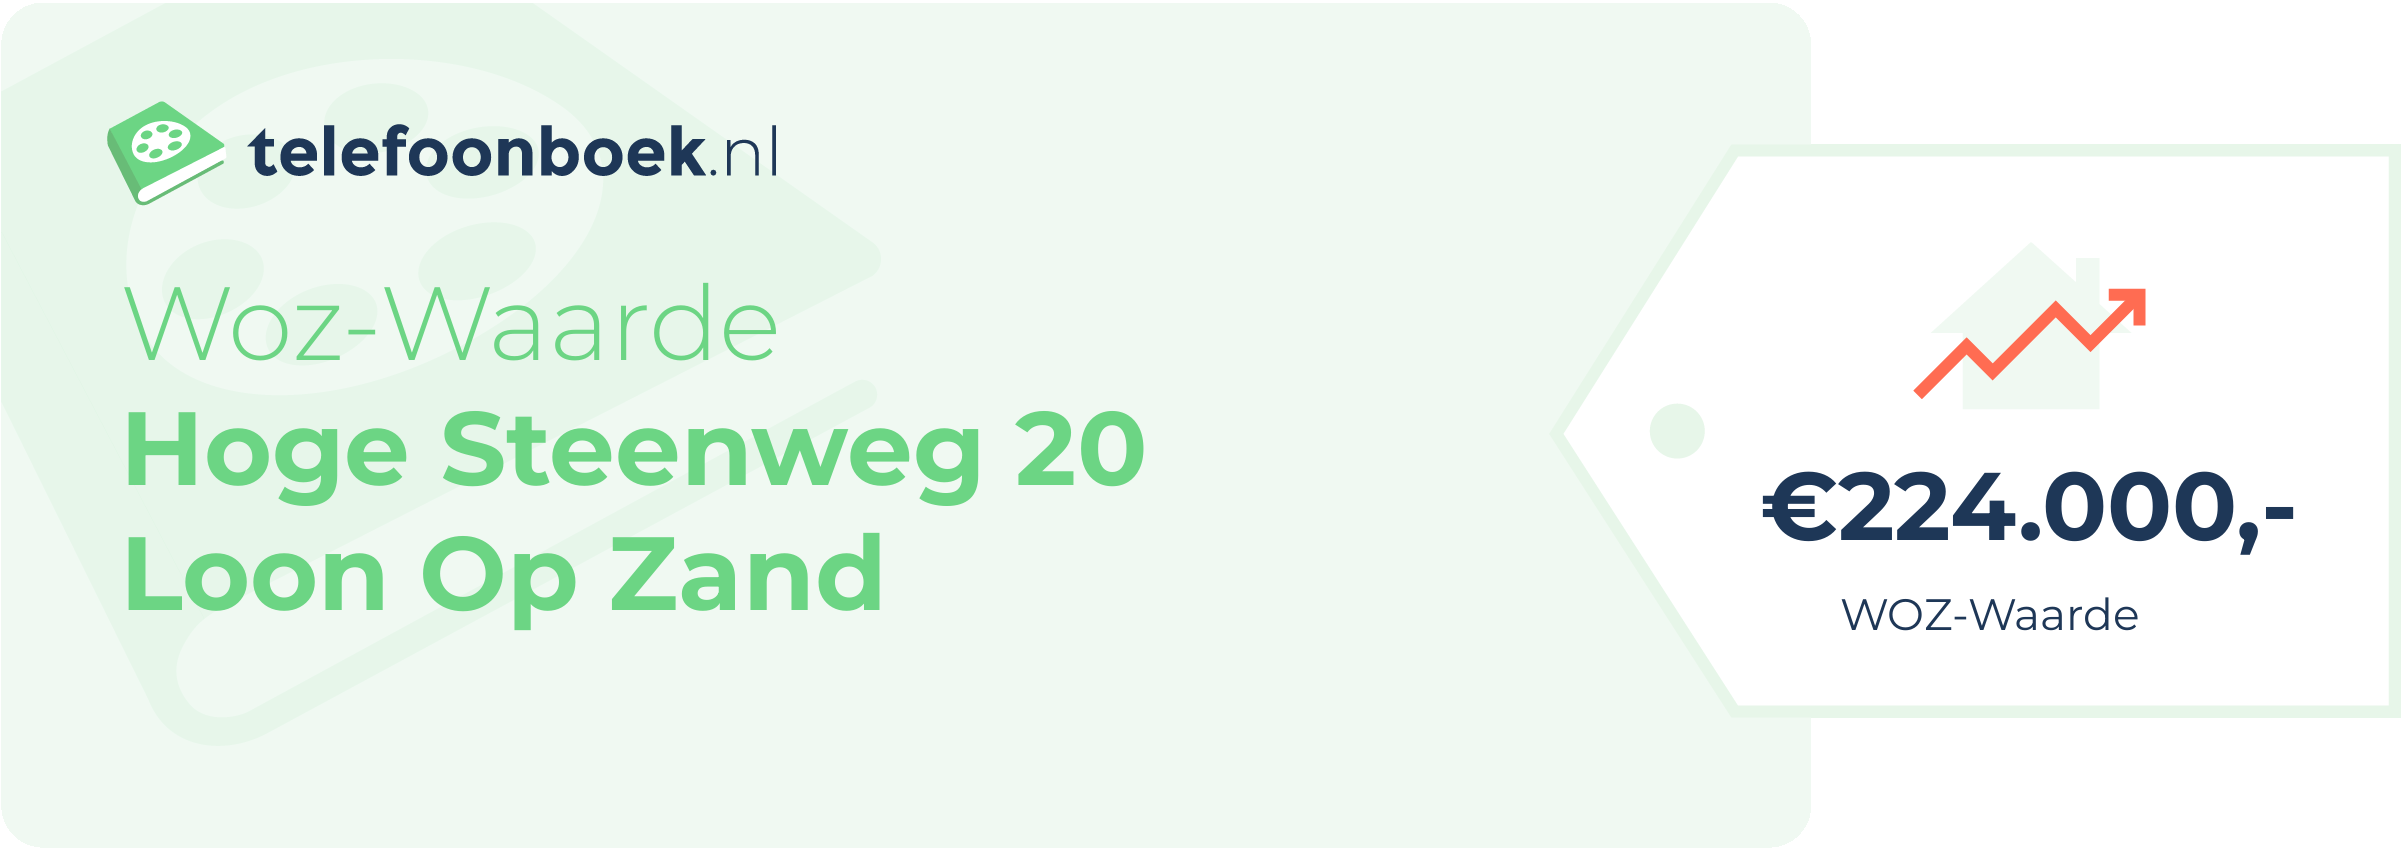 WOZ-waarde Hoge Steenweg 20 Loon Op Zand